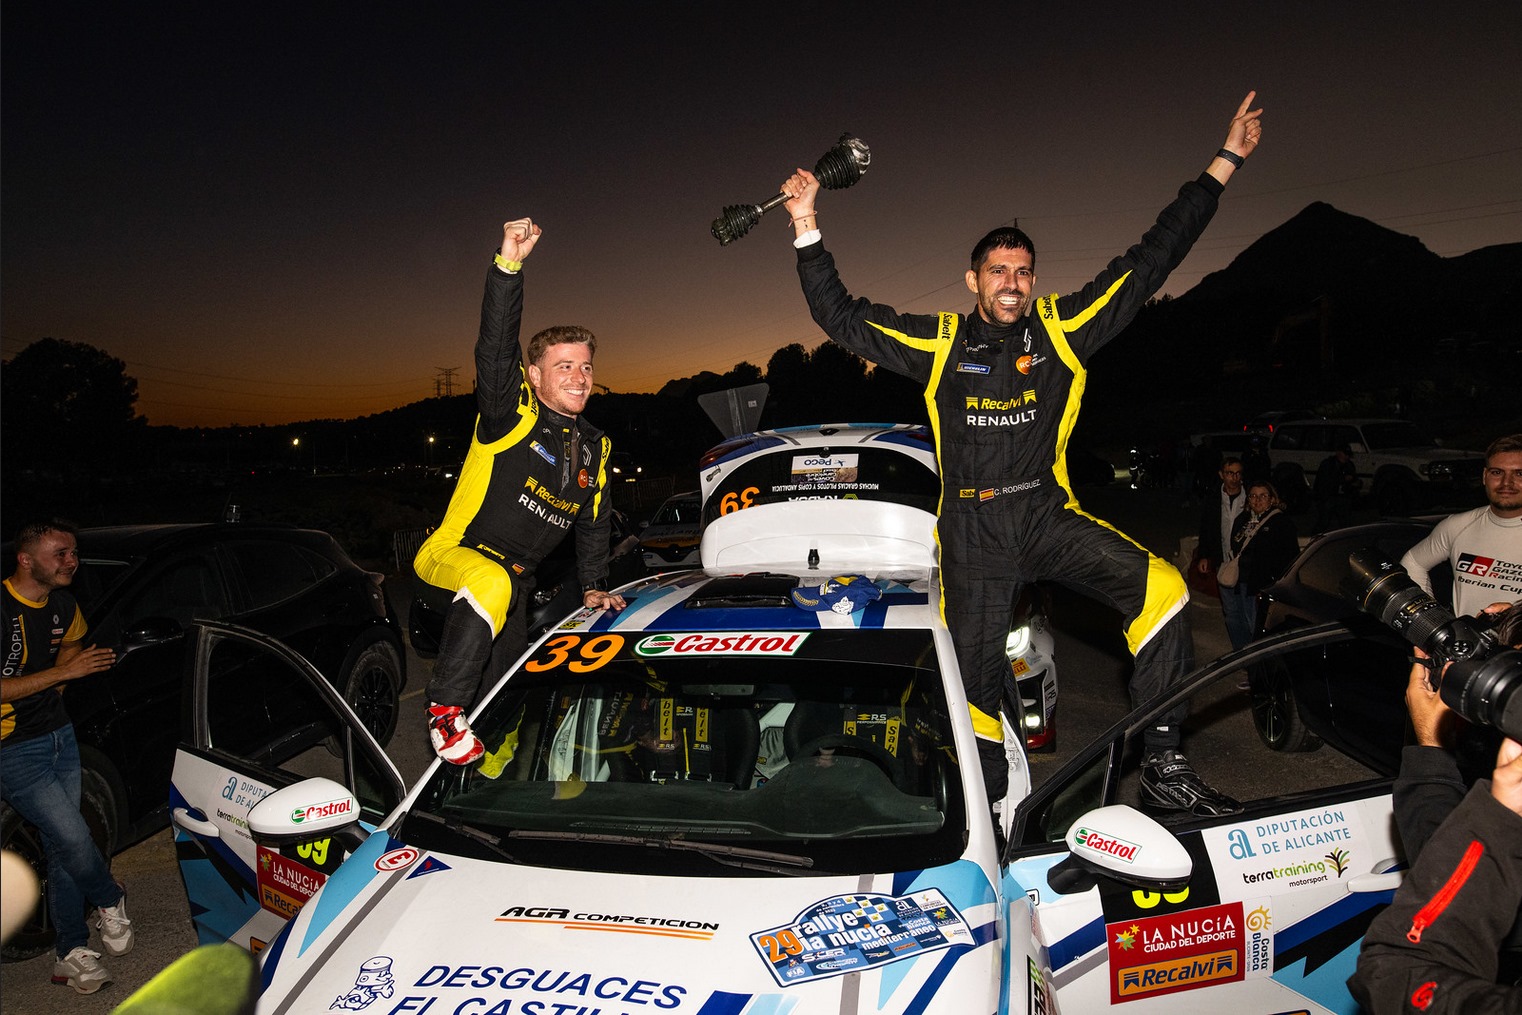 David Nieto y Carlos Rodríguez Campeones de España de Rallys de asfalto.